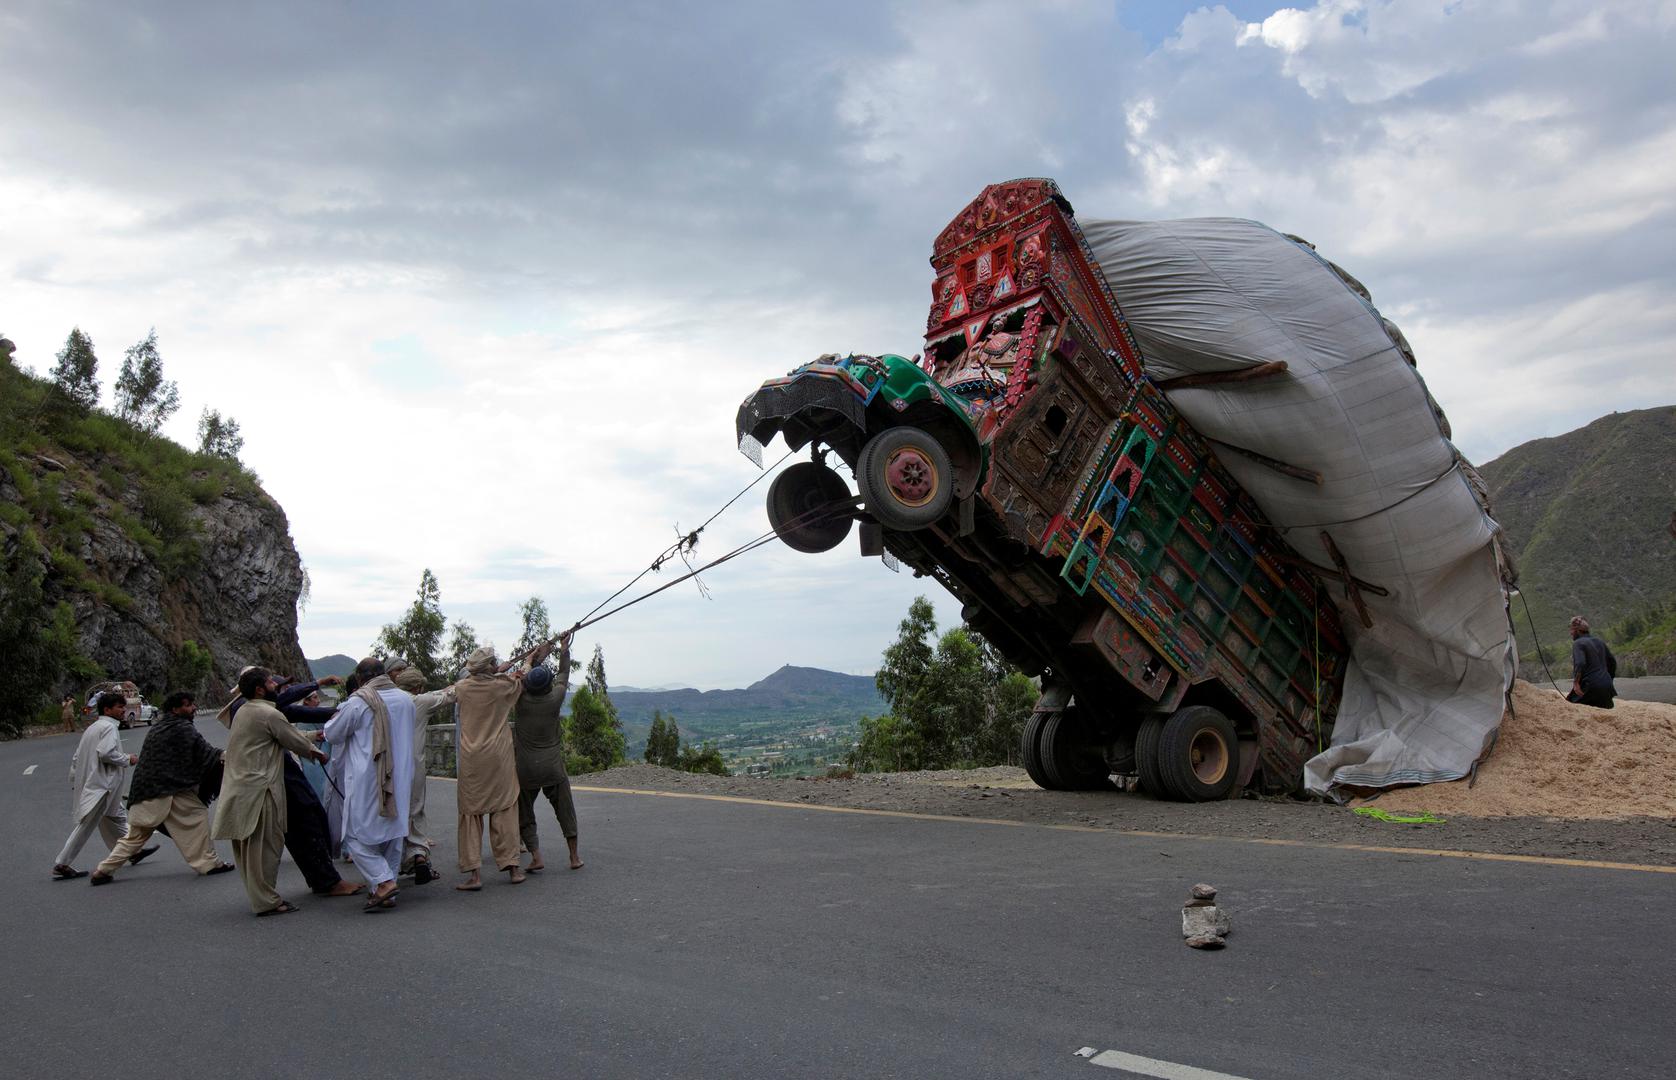 Konopcima pokušavaju ispraviti preopterećeni kamion. Snimljeno 13. travnja 2012. oko 165 km od Islamabada